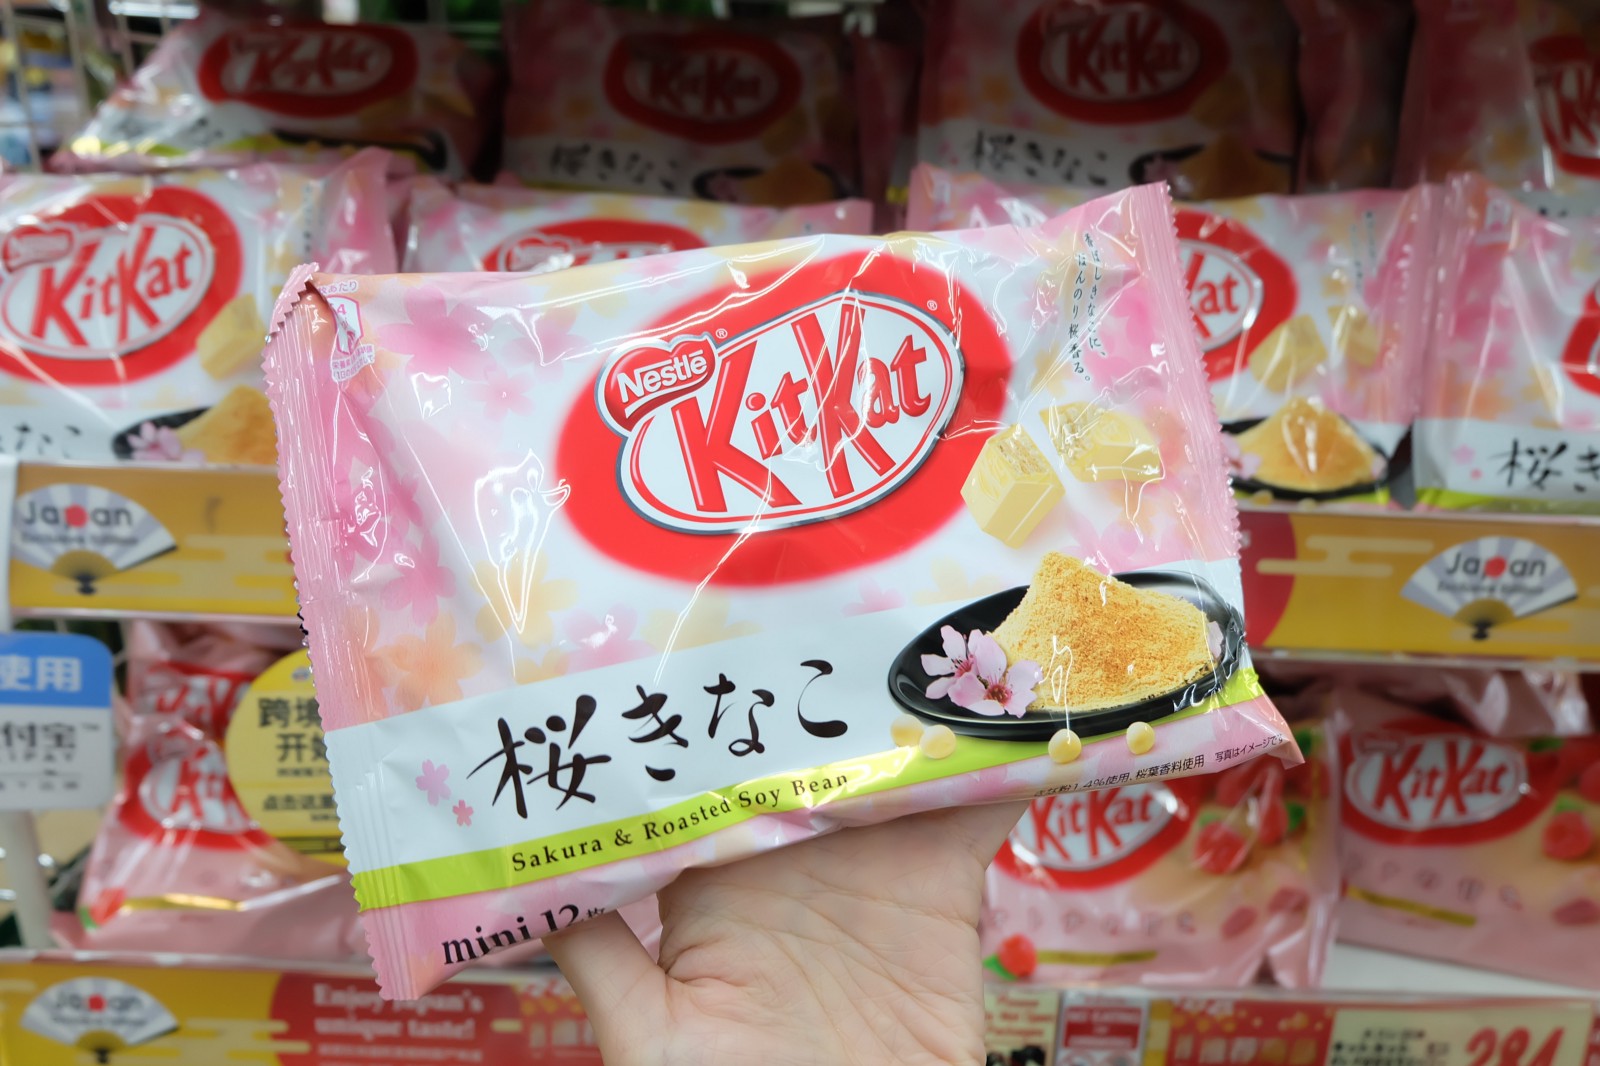 KitKat Sakura & Kinako (roasted soy bean) flavour